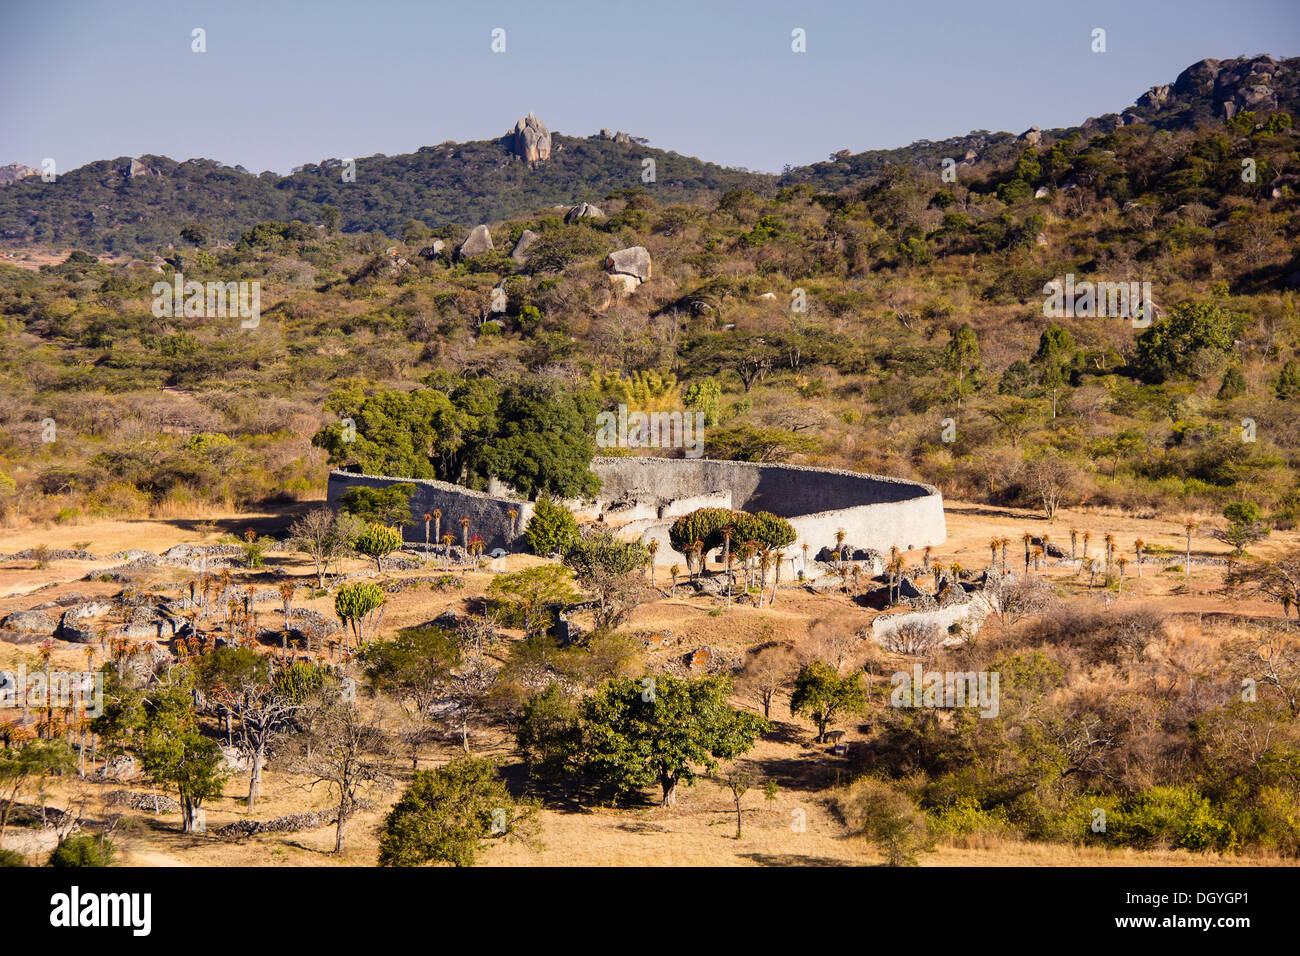 Boîtier de l'Ouest, le Grand Zimbabwe, près de Harare, Zimbabwe, Afrique du Sud Banque D'Images